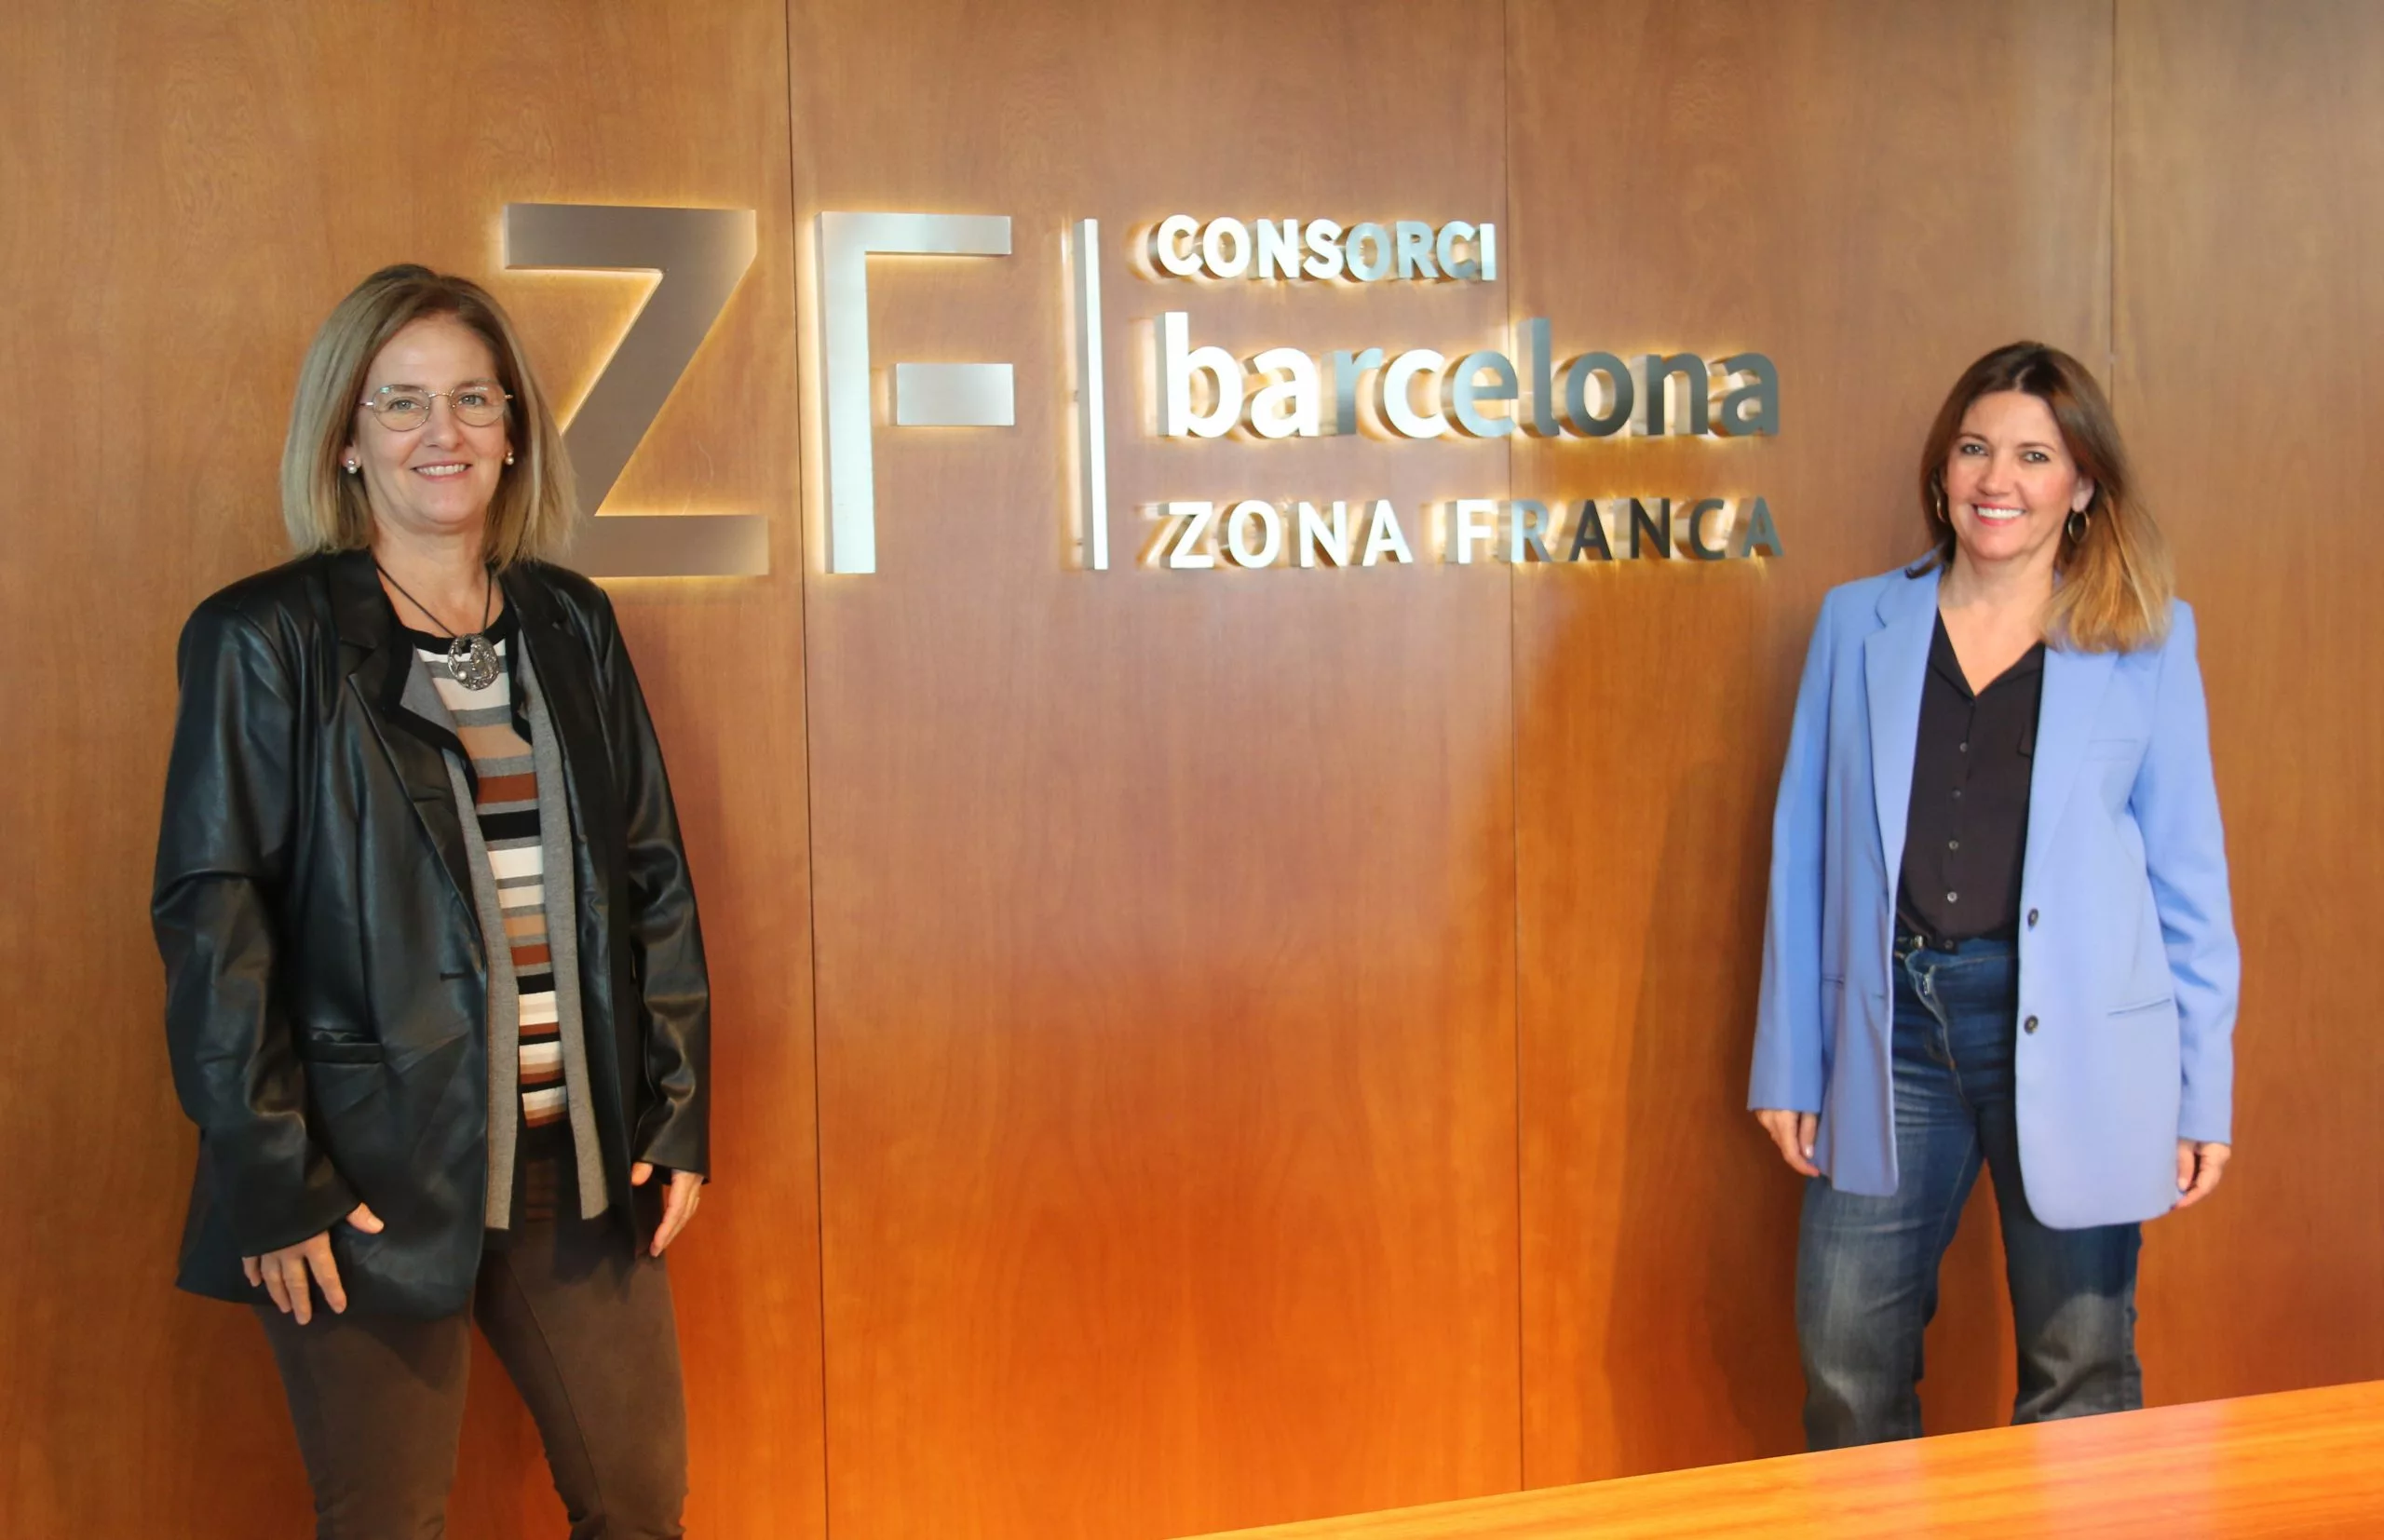 L’Observatori Dona, Empresa i Economia i el Consorci de la Zona Franca de Barcelona promouran la igualtat en les empreses i organitzacions associades al Consorci